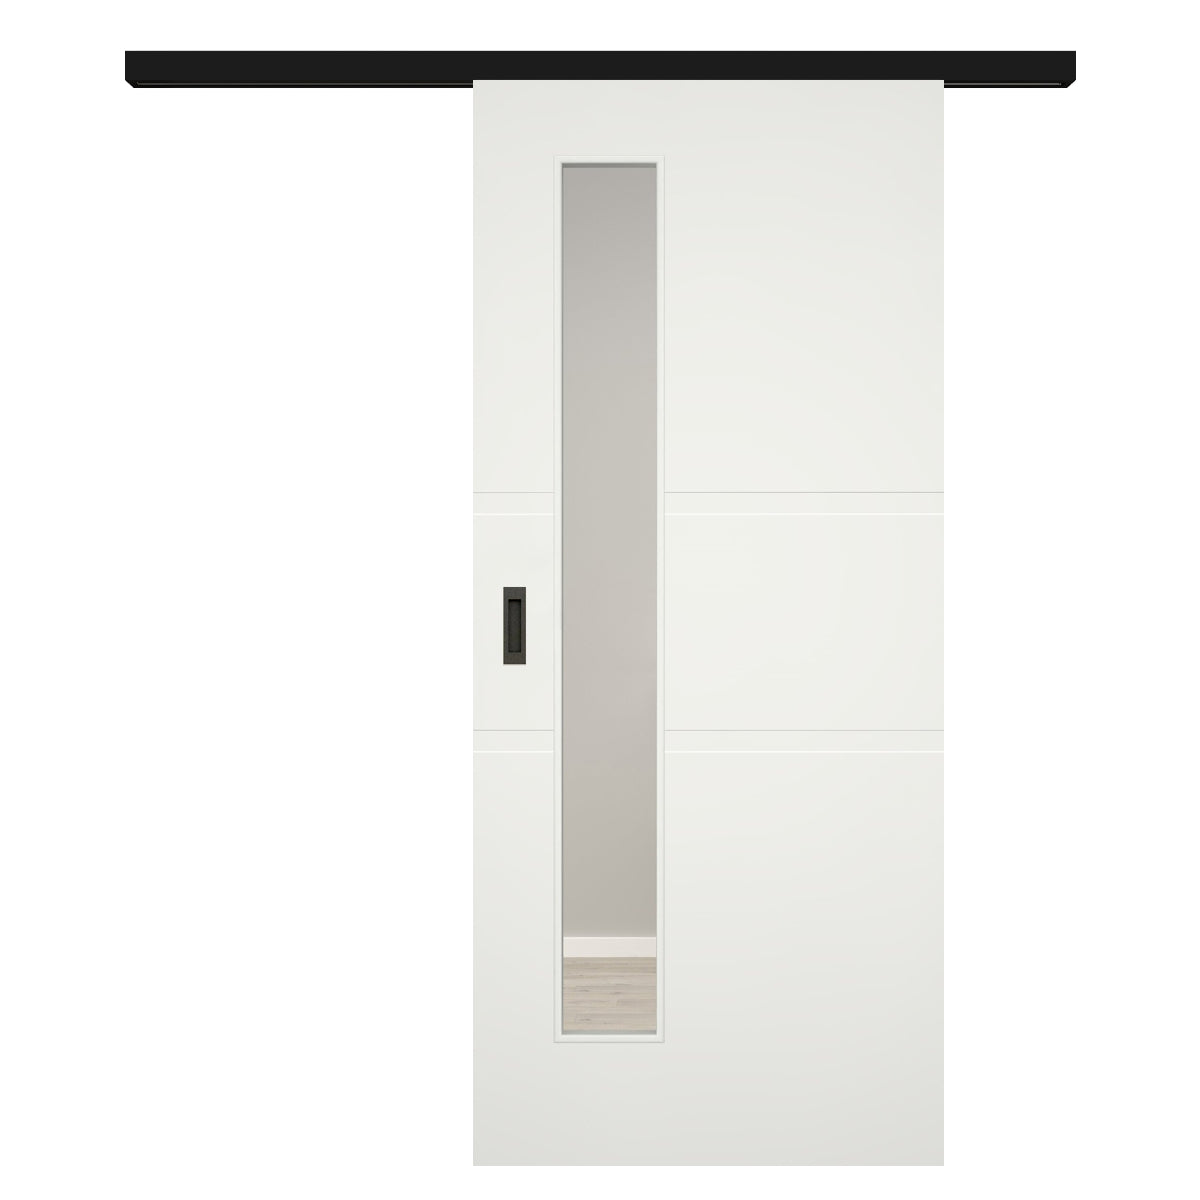 Schiebetür für Set mit schwarzem Laufkasten mit Lichtausschnitt soft-weiß 2 breite Rillen - Modell Designtür QB21LAS